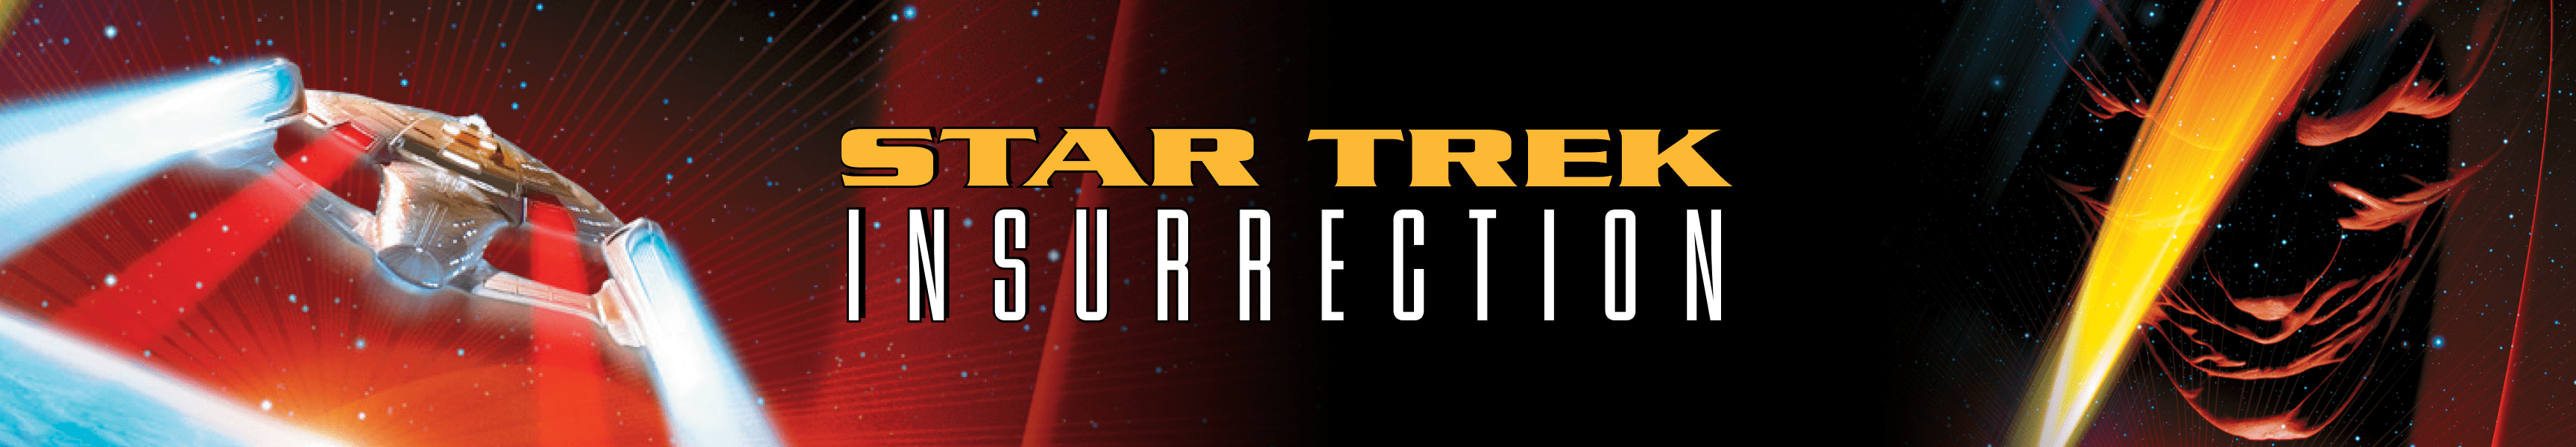 Insurrection de Star Trek